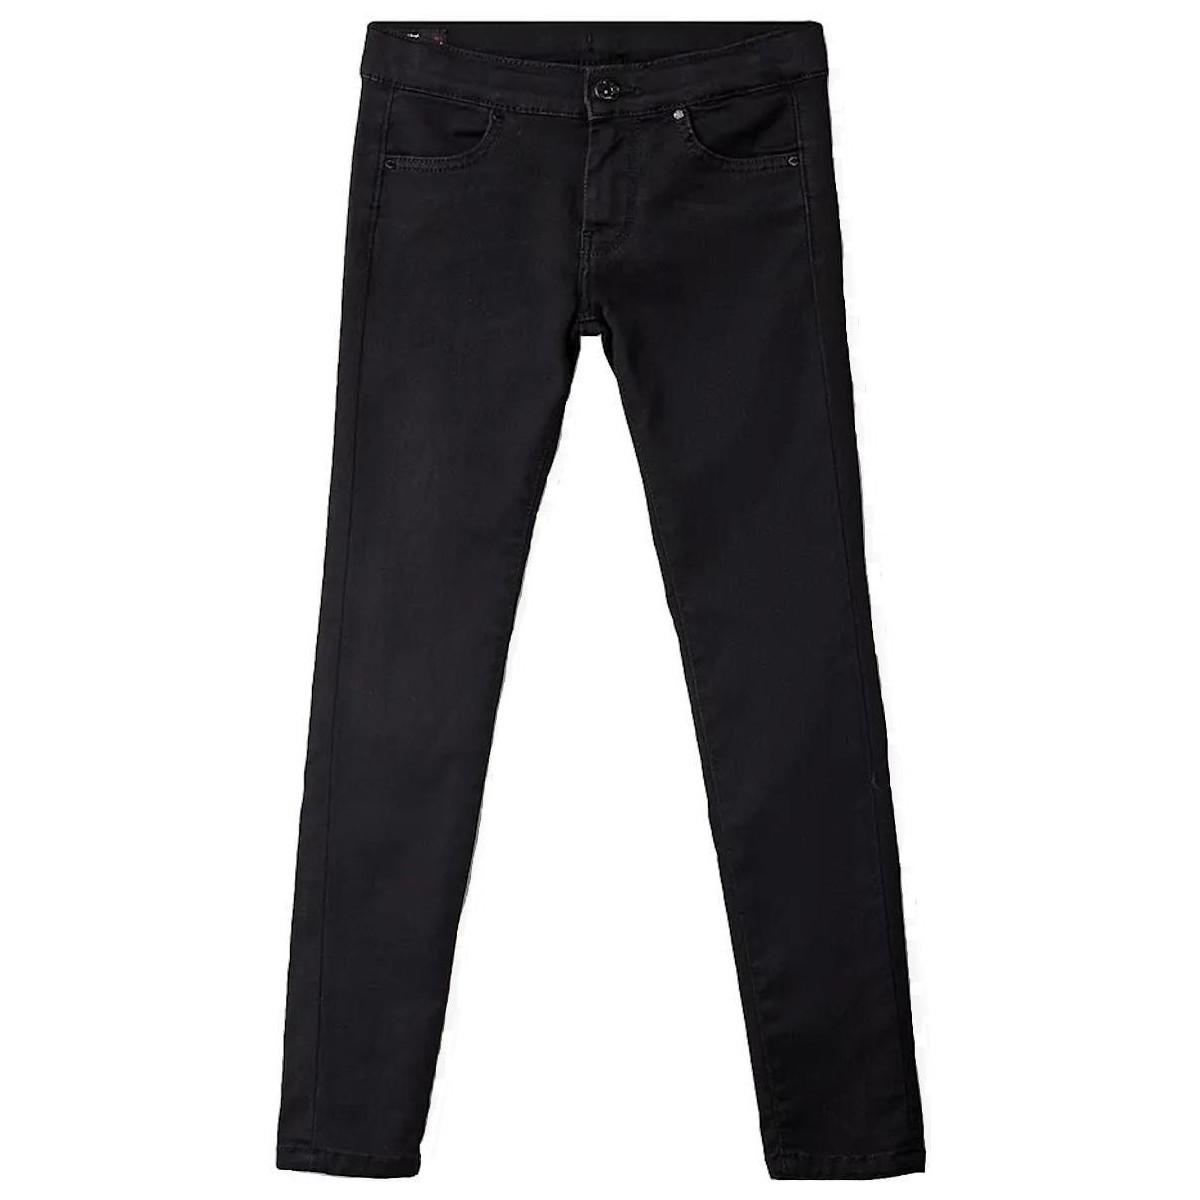 Textiel Meisjes Jeans Pepe jeans  Zwart